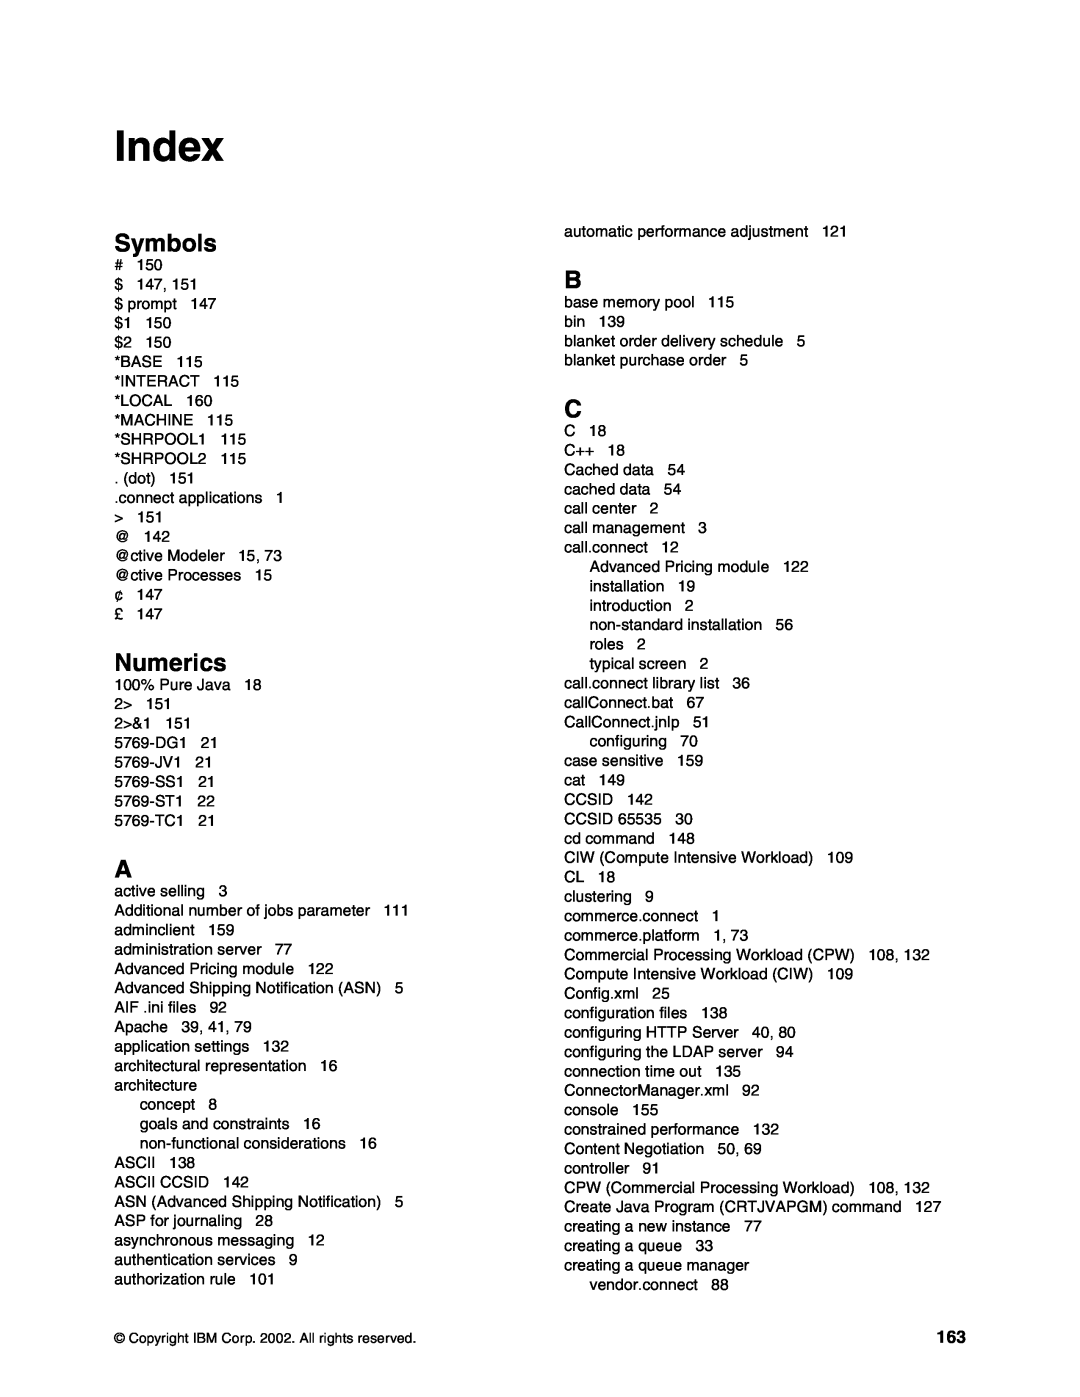 IBM SG24-6526-00 manual Index, Symbols, Numerics 